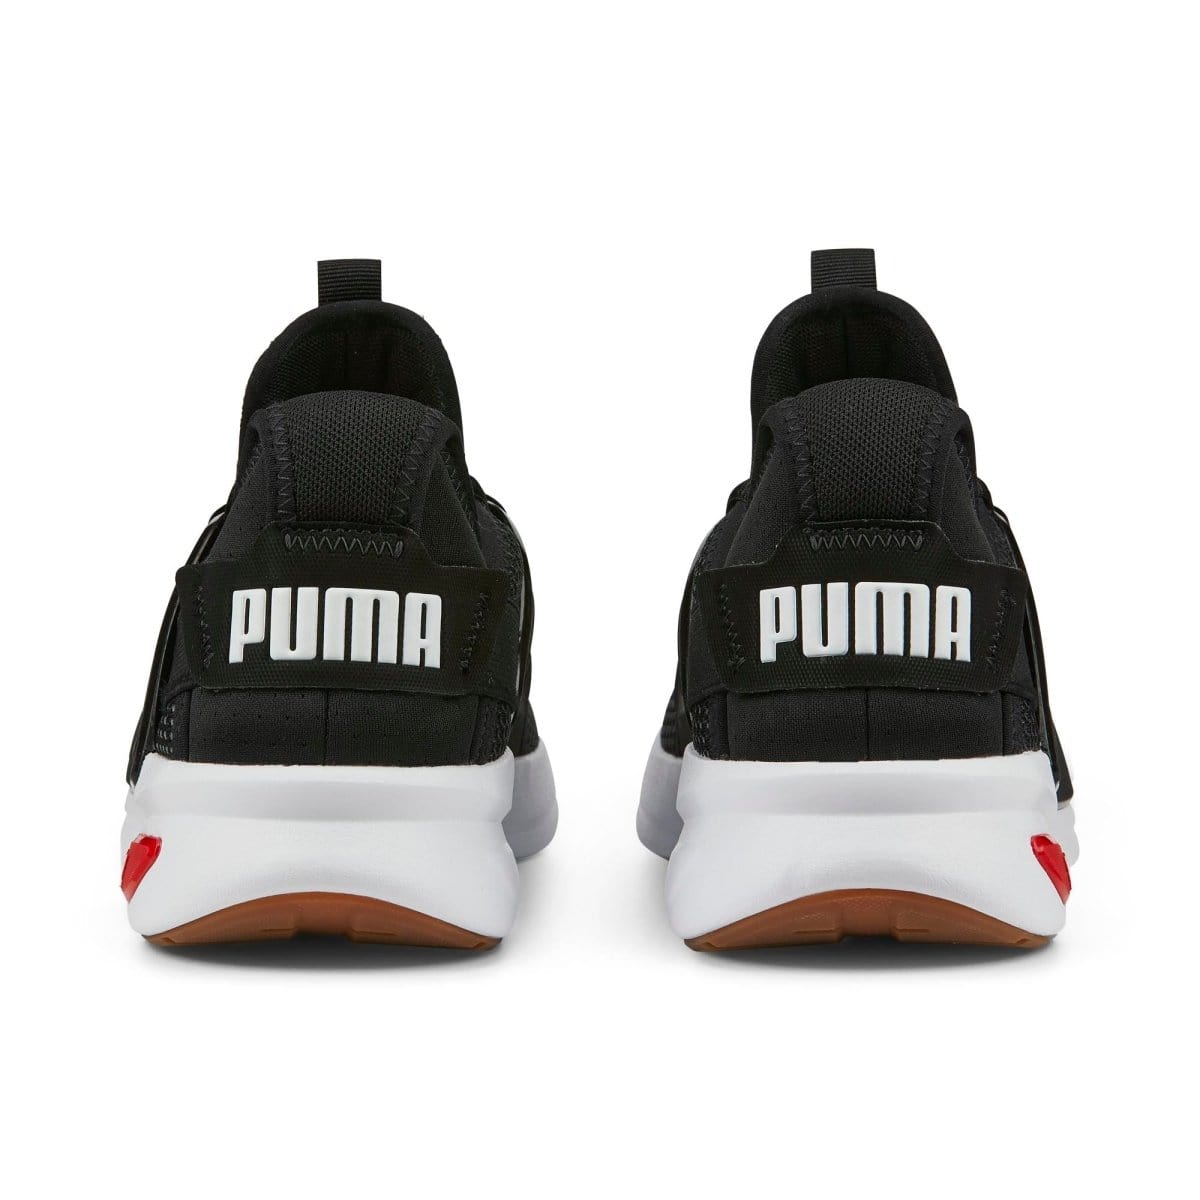 Puma PUMA MEN'S SOFTRIDE ENZO BLACK/RED SHOE - INSPORT